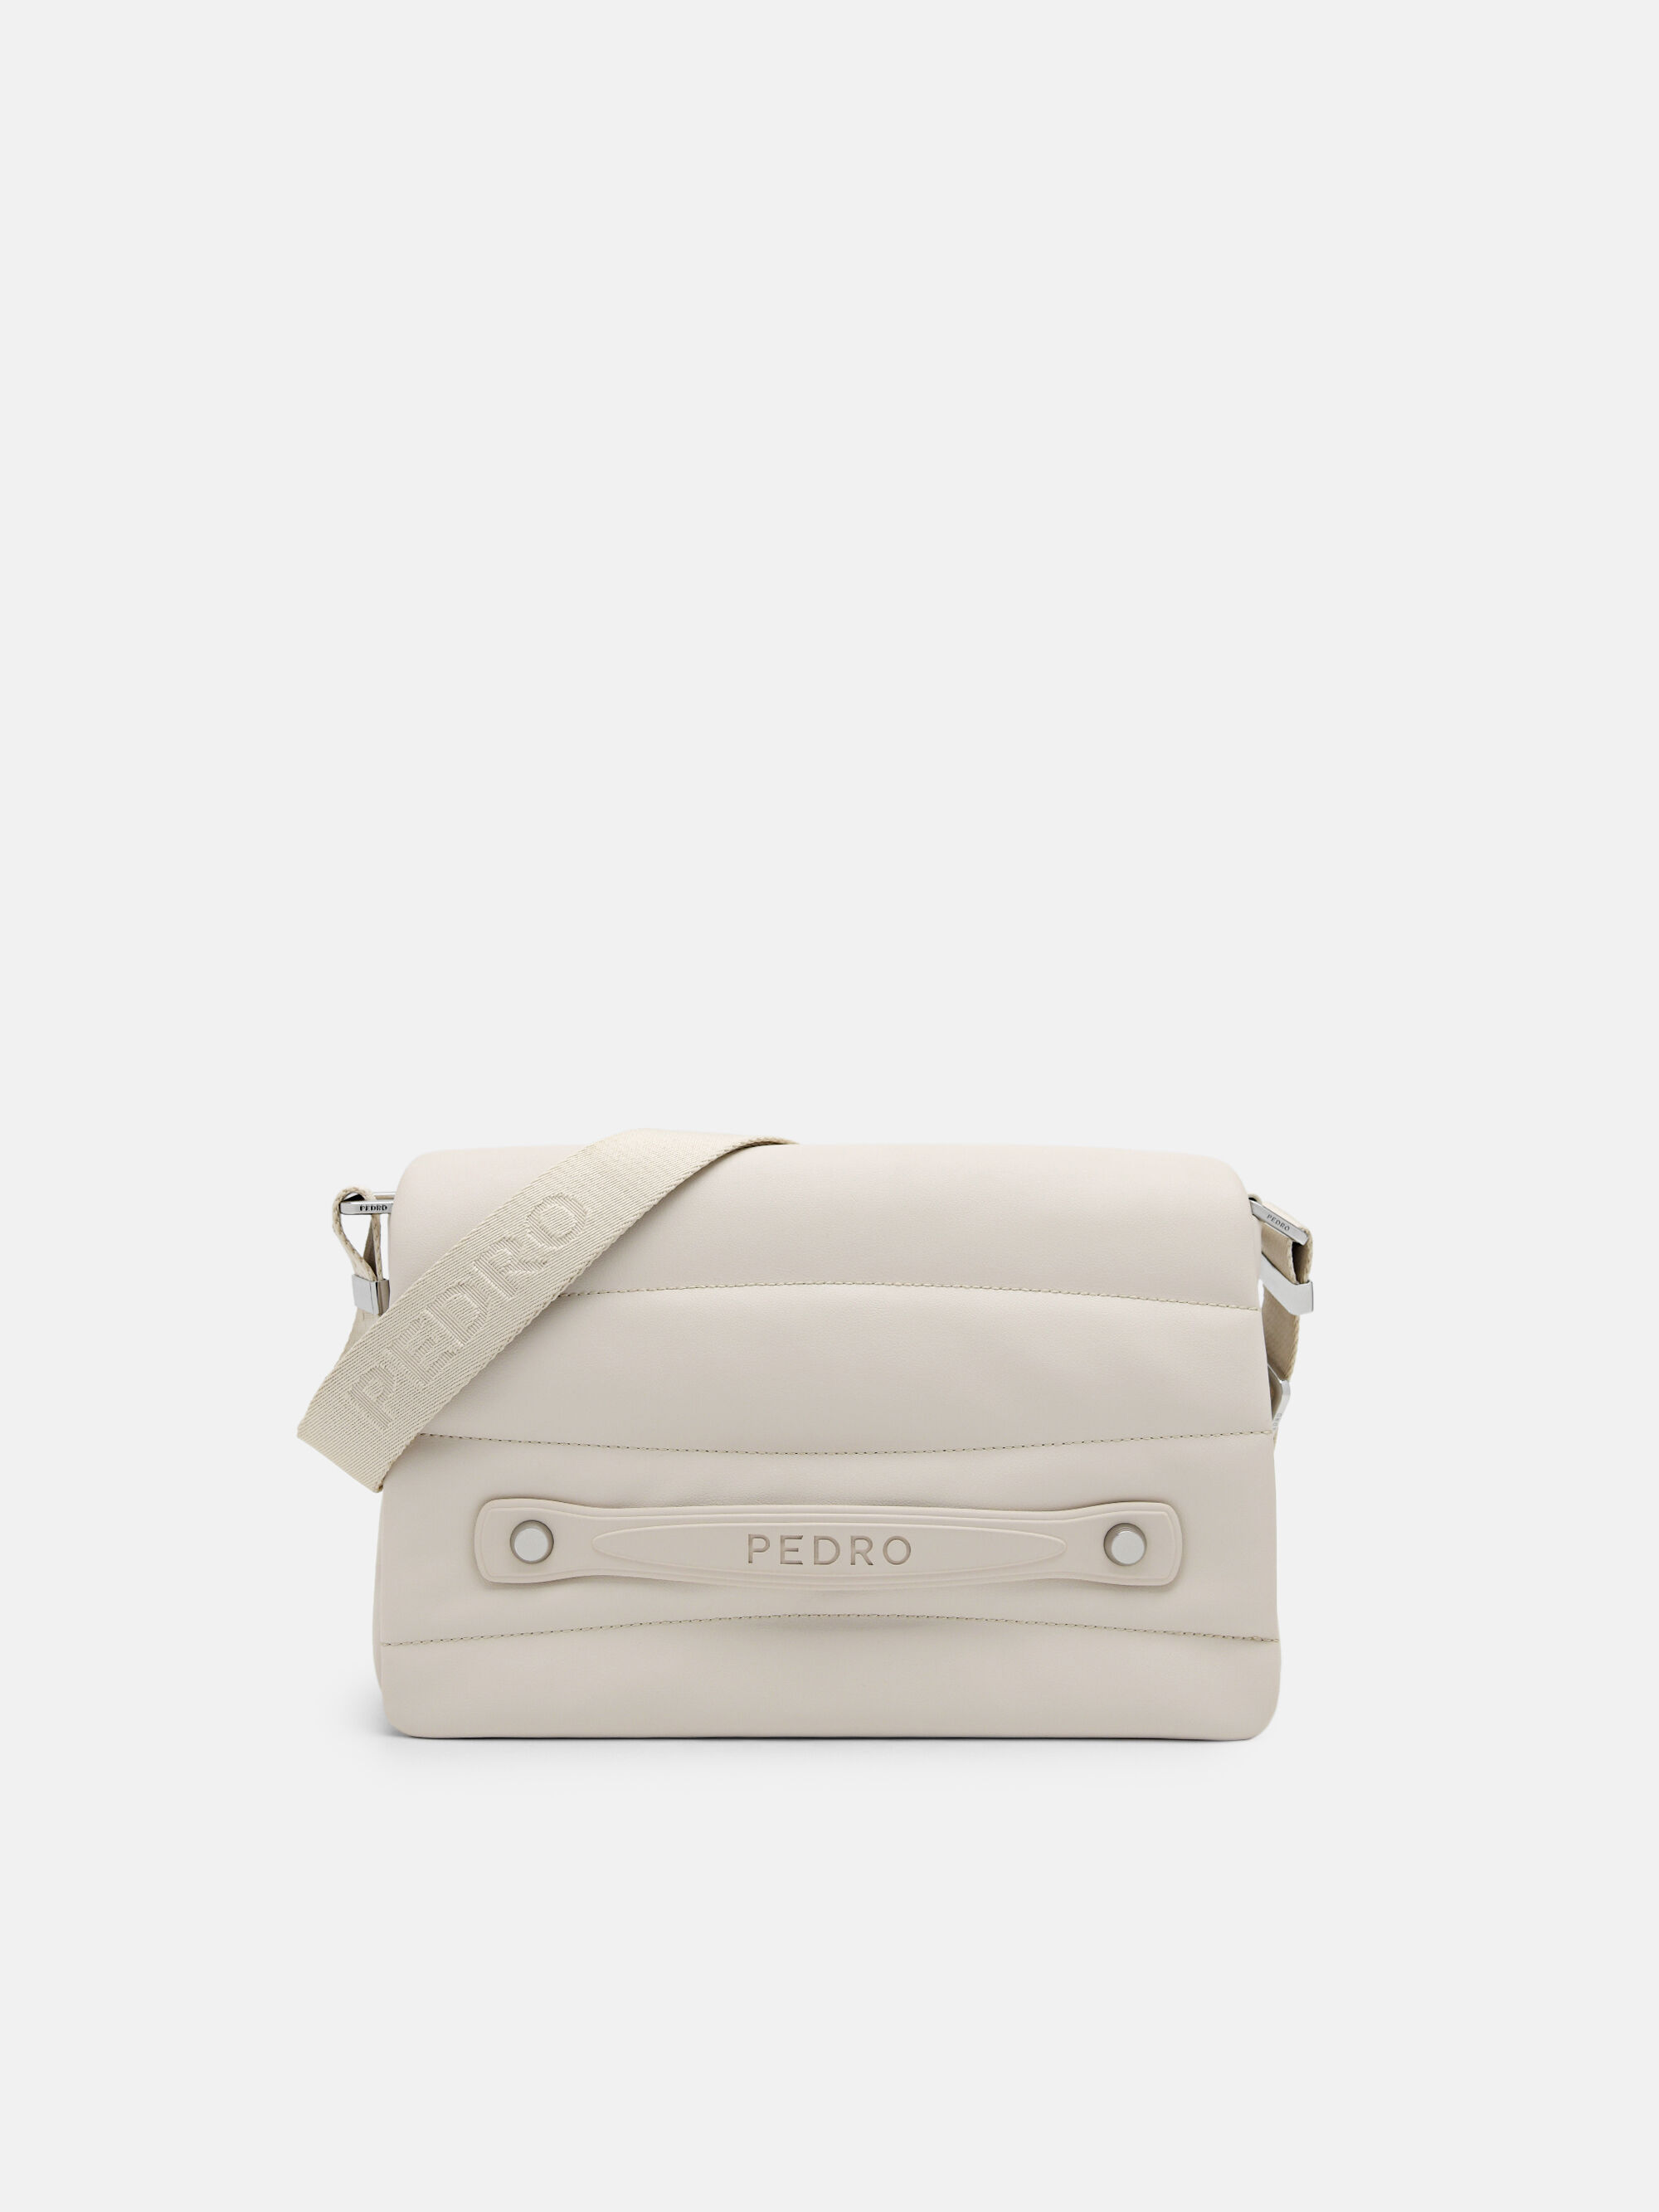 PEDRO Bags for Women - Poshmark